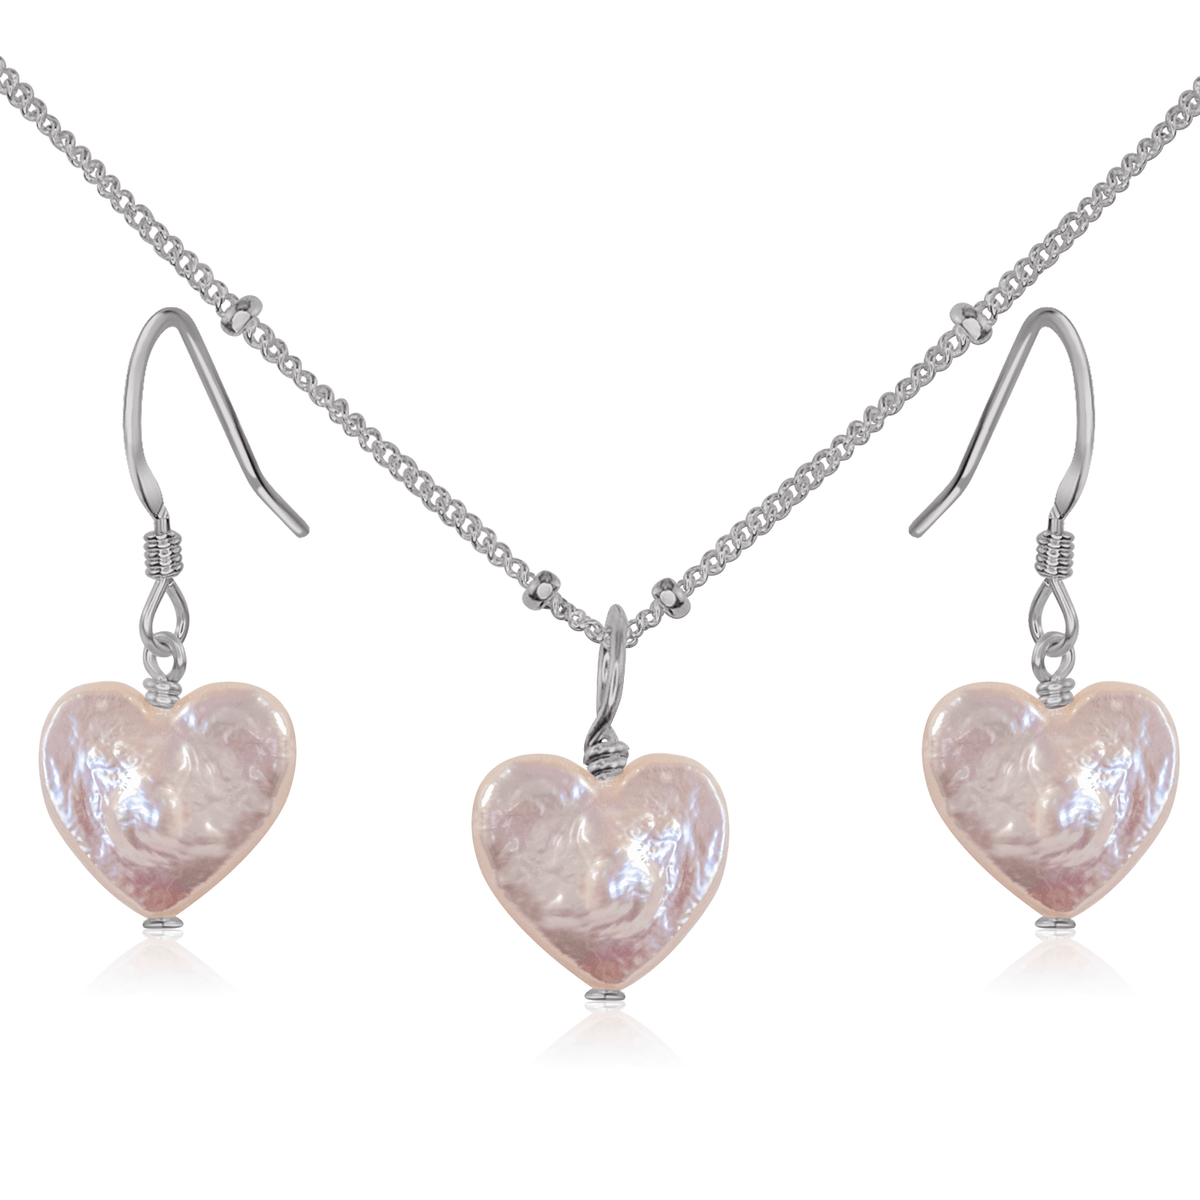 Freshwater Pearl Heart Jewellery Set - Freshwater Pearl Heart Jewellery Set - Stainless Steel / Satellite / Necklace & Earrings - Luna Tide Handmade Crystal Jewellery